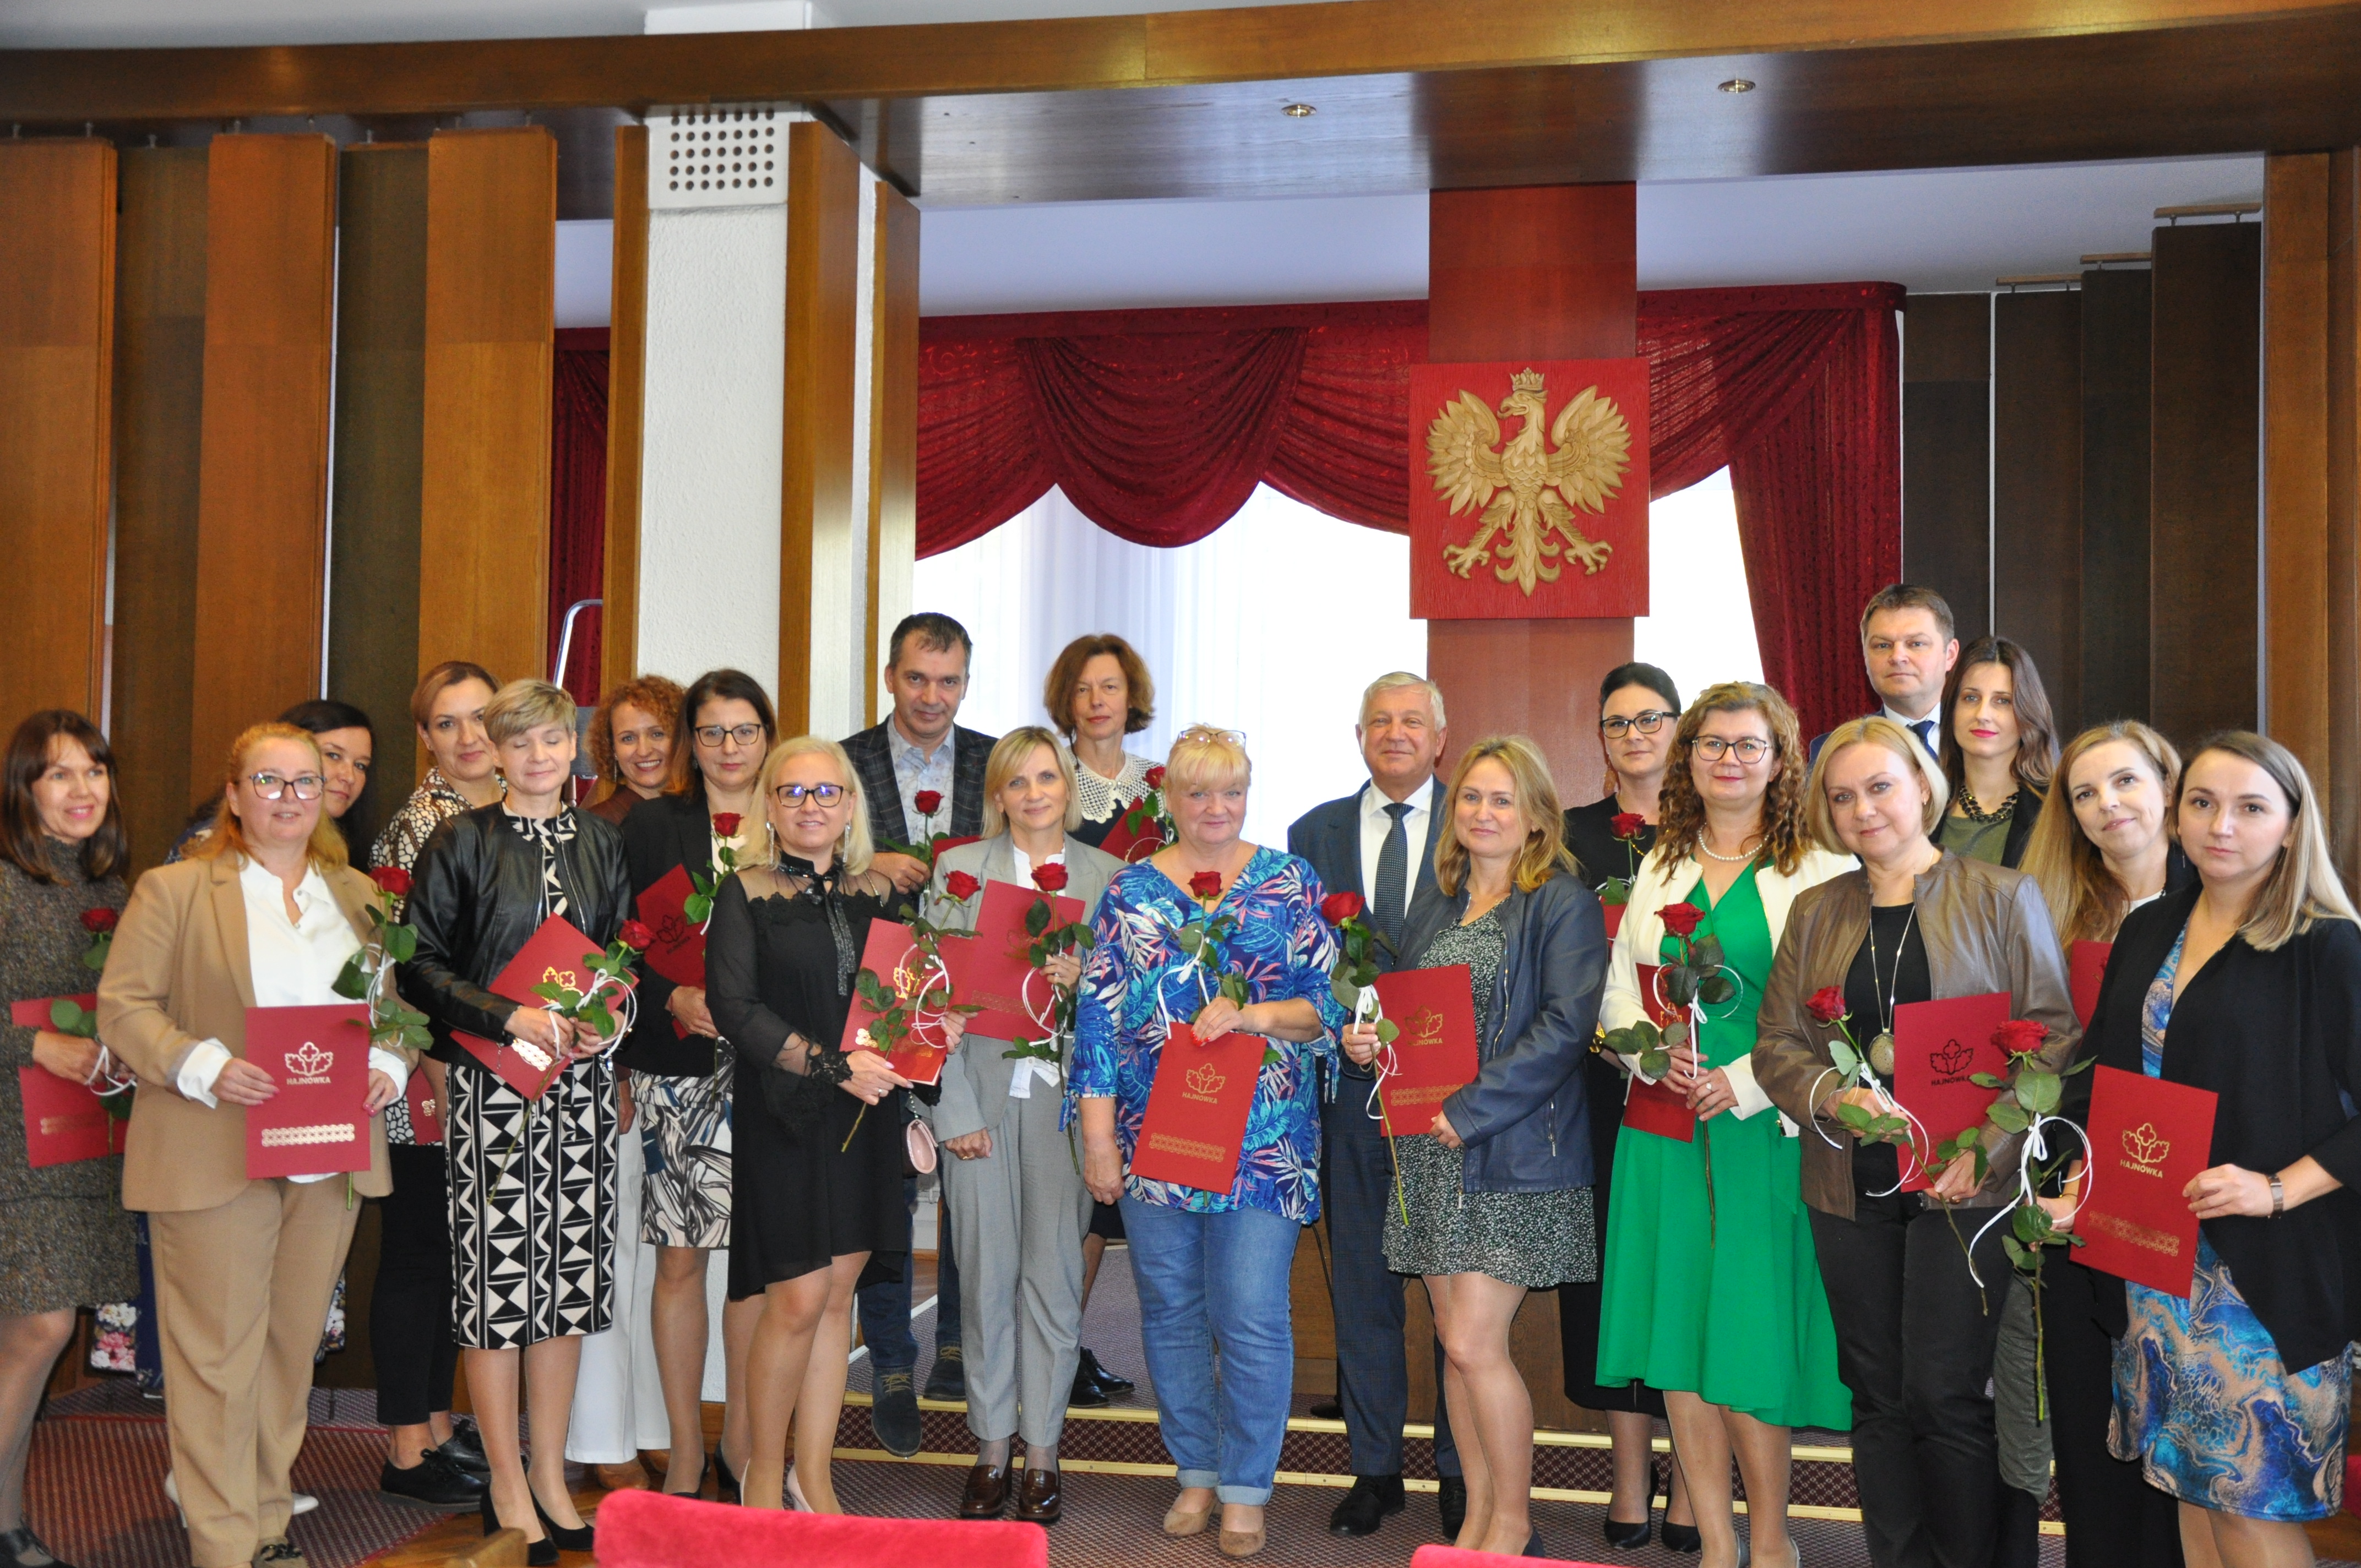 zdjęcie grupowe nauczycieli wraz z burmistrzami po rozdaniu nagród